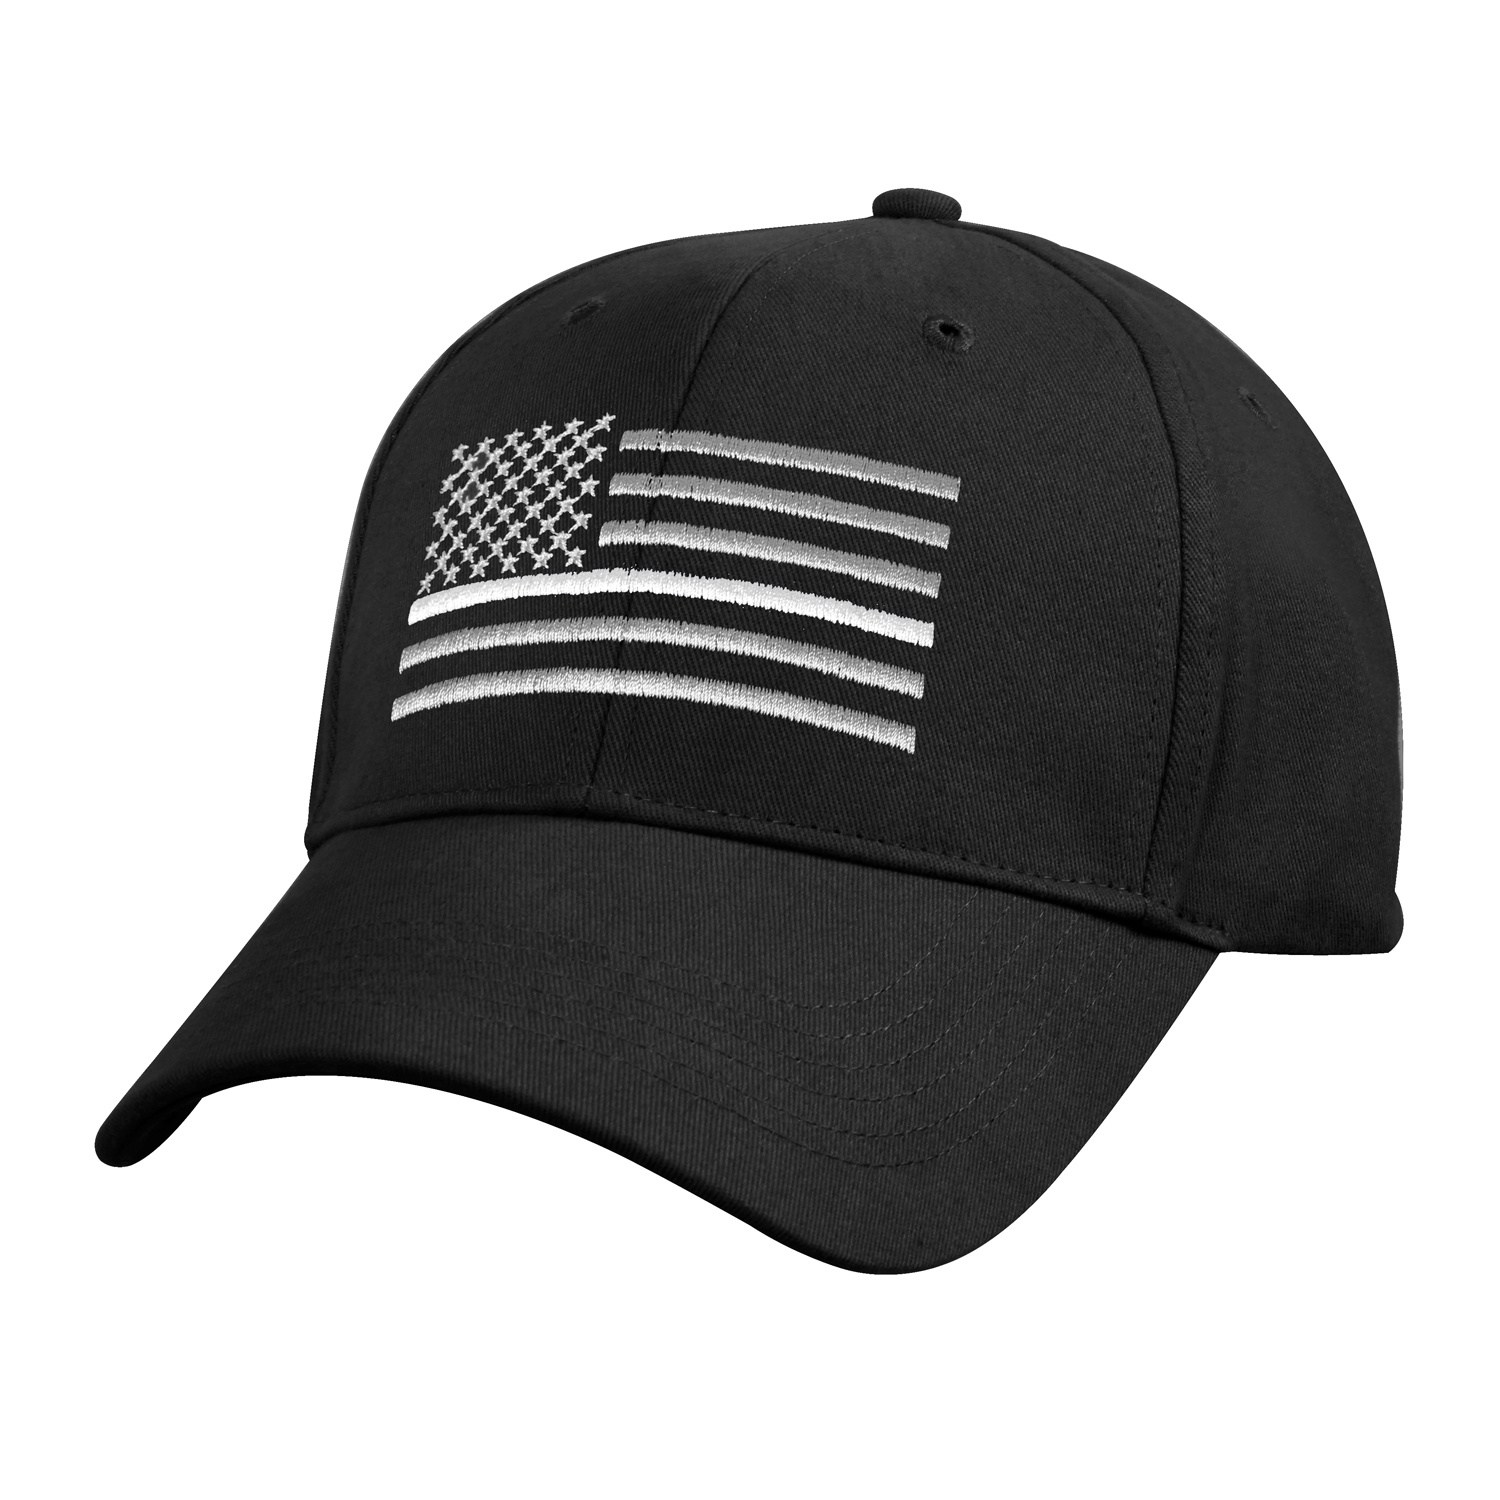 čepice s vlajkou USA s bílou linkou černá